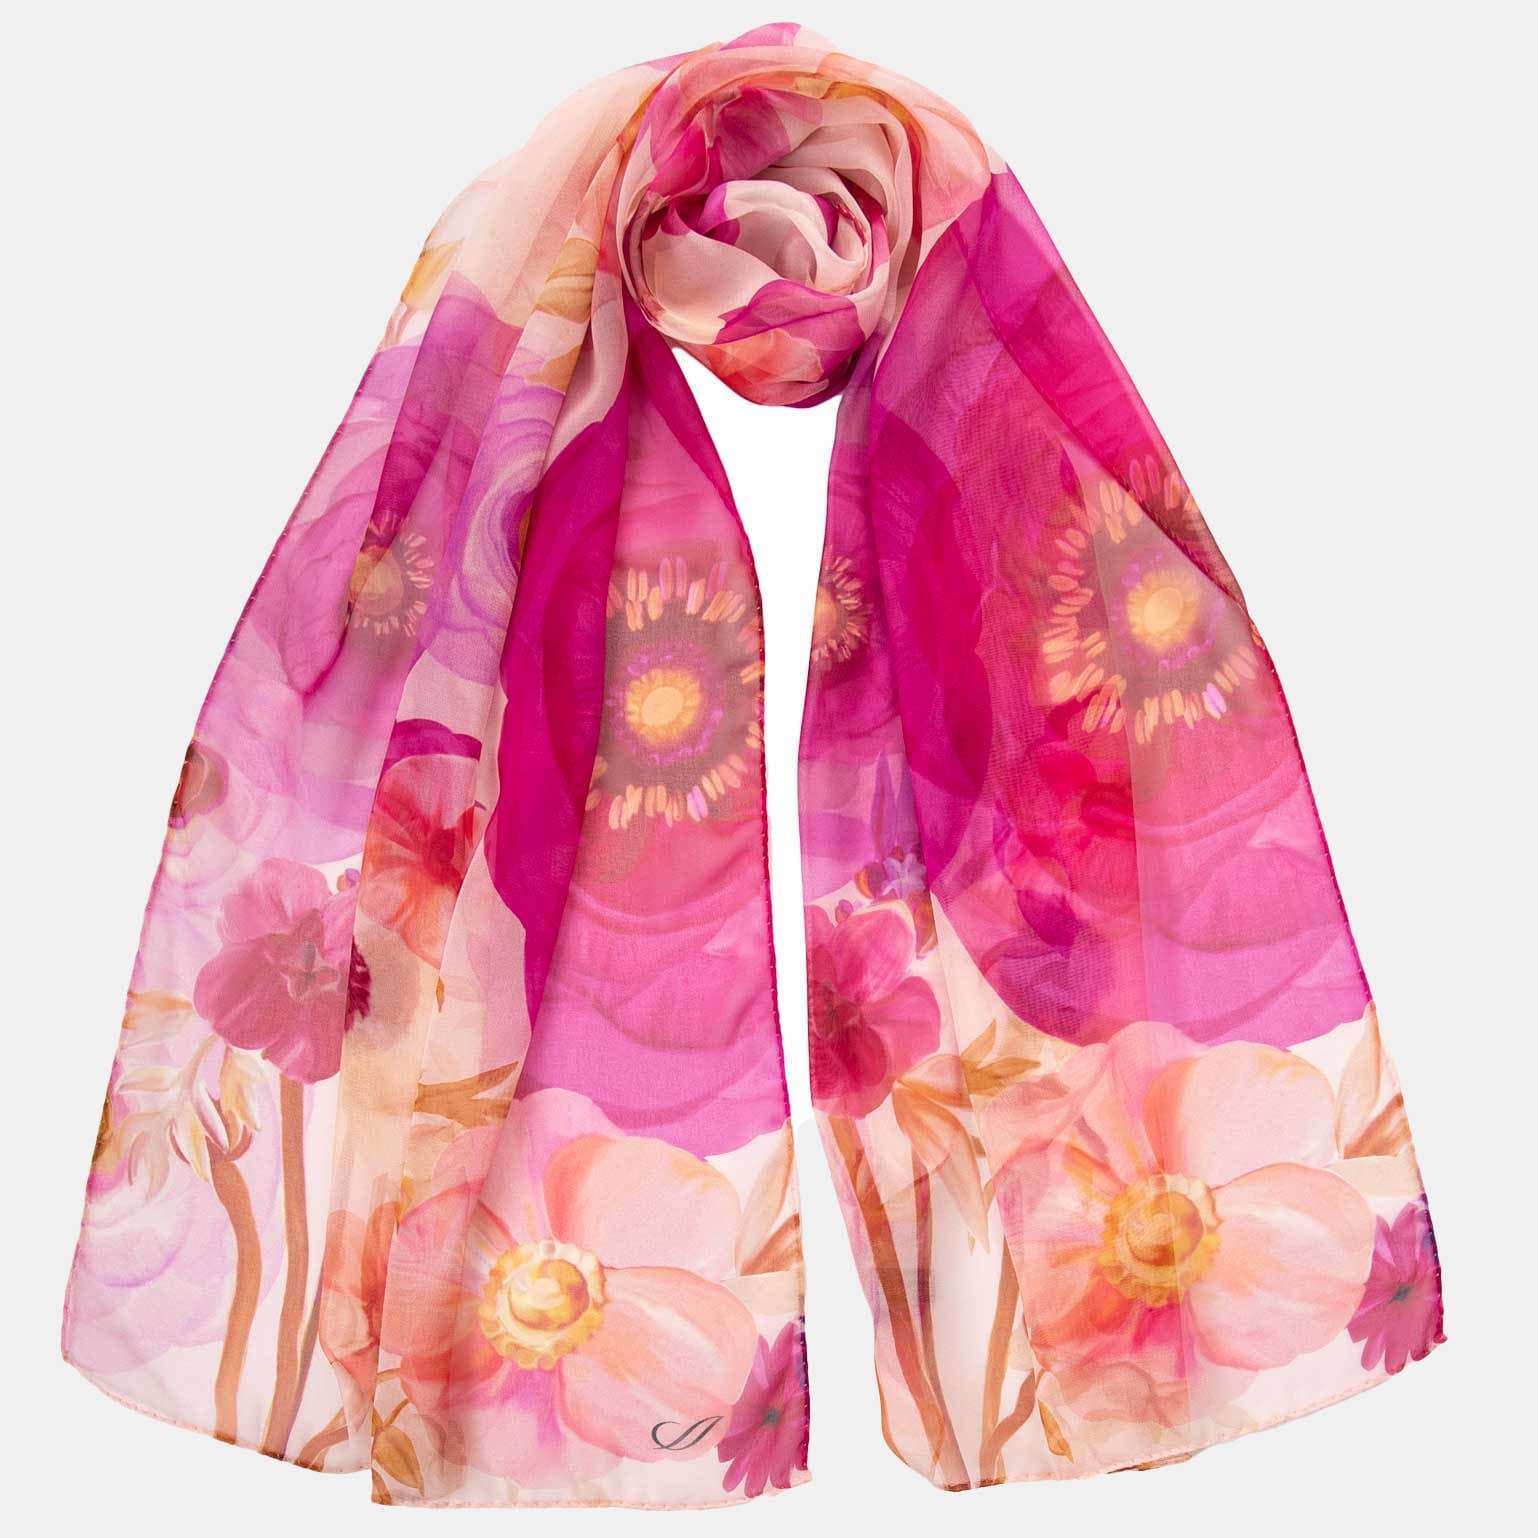 Best pink silk fashion scarf for women